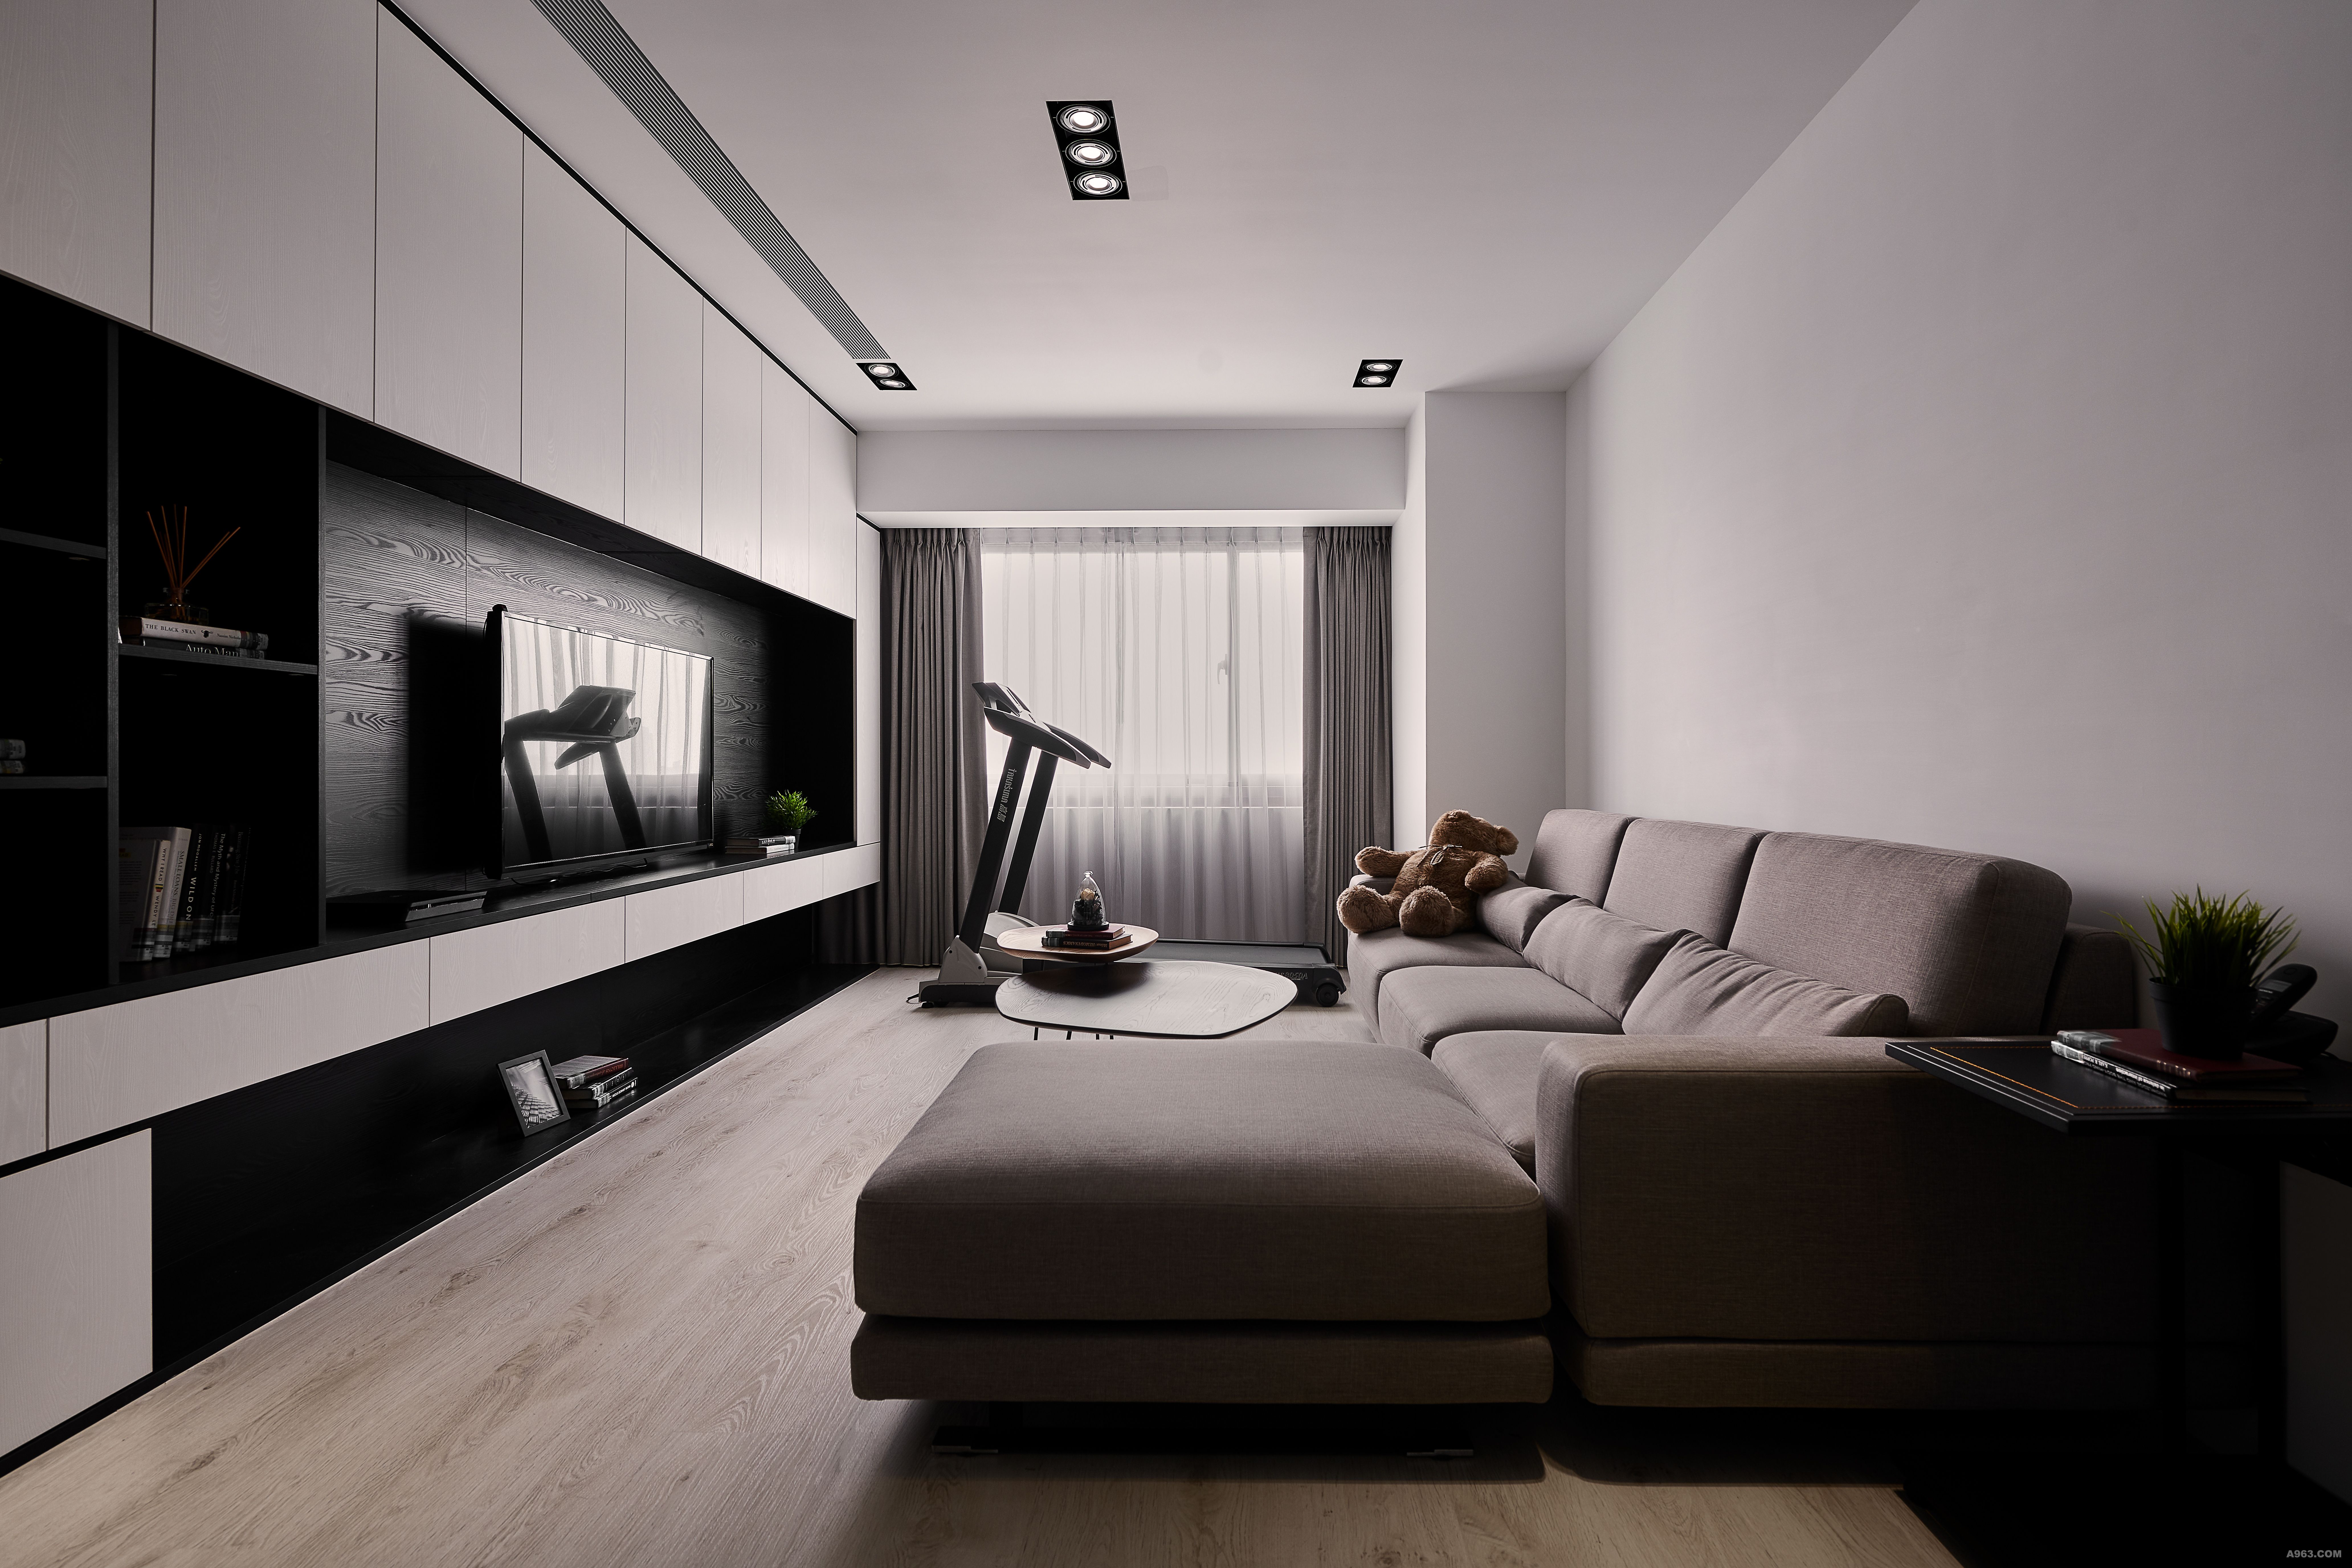 天花板利用燈具及冷氣出風口黑與白顏色產生線條，對應著整面電視牆視覺延伸至天花板設計。軟件特地選擇暖色系，在黑與白之間增添一些暖度。
